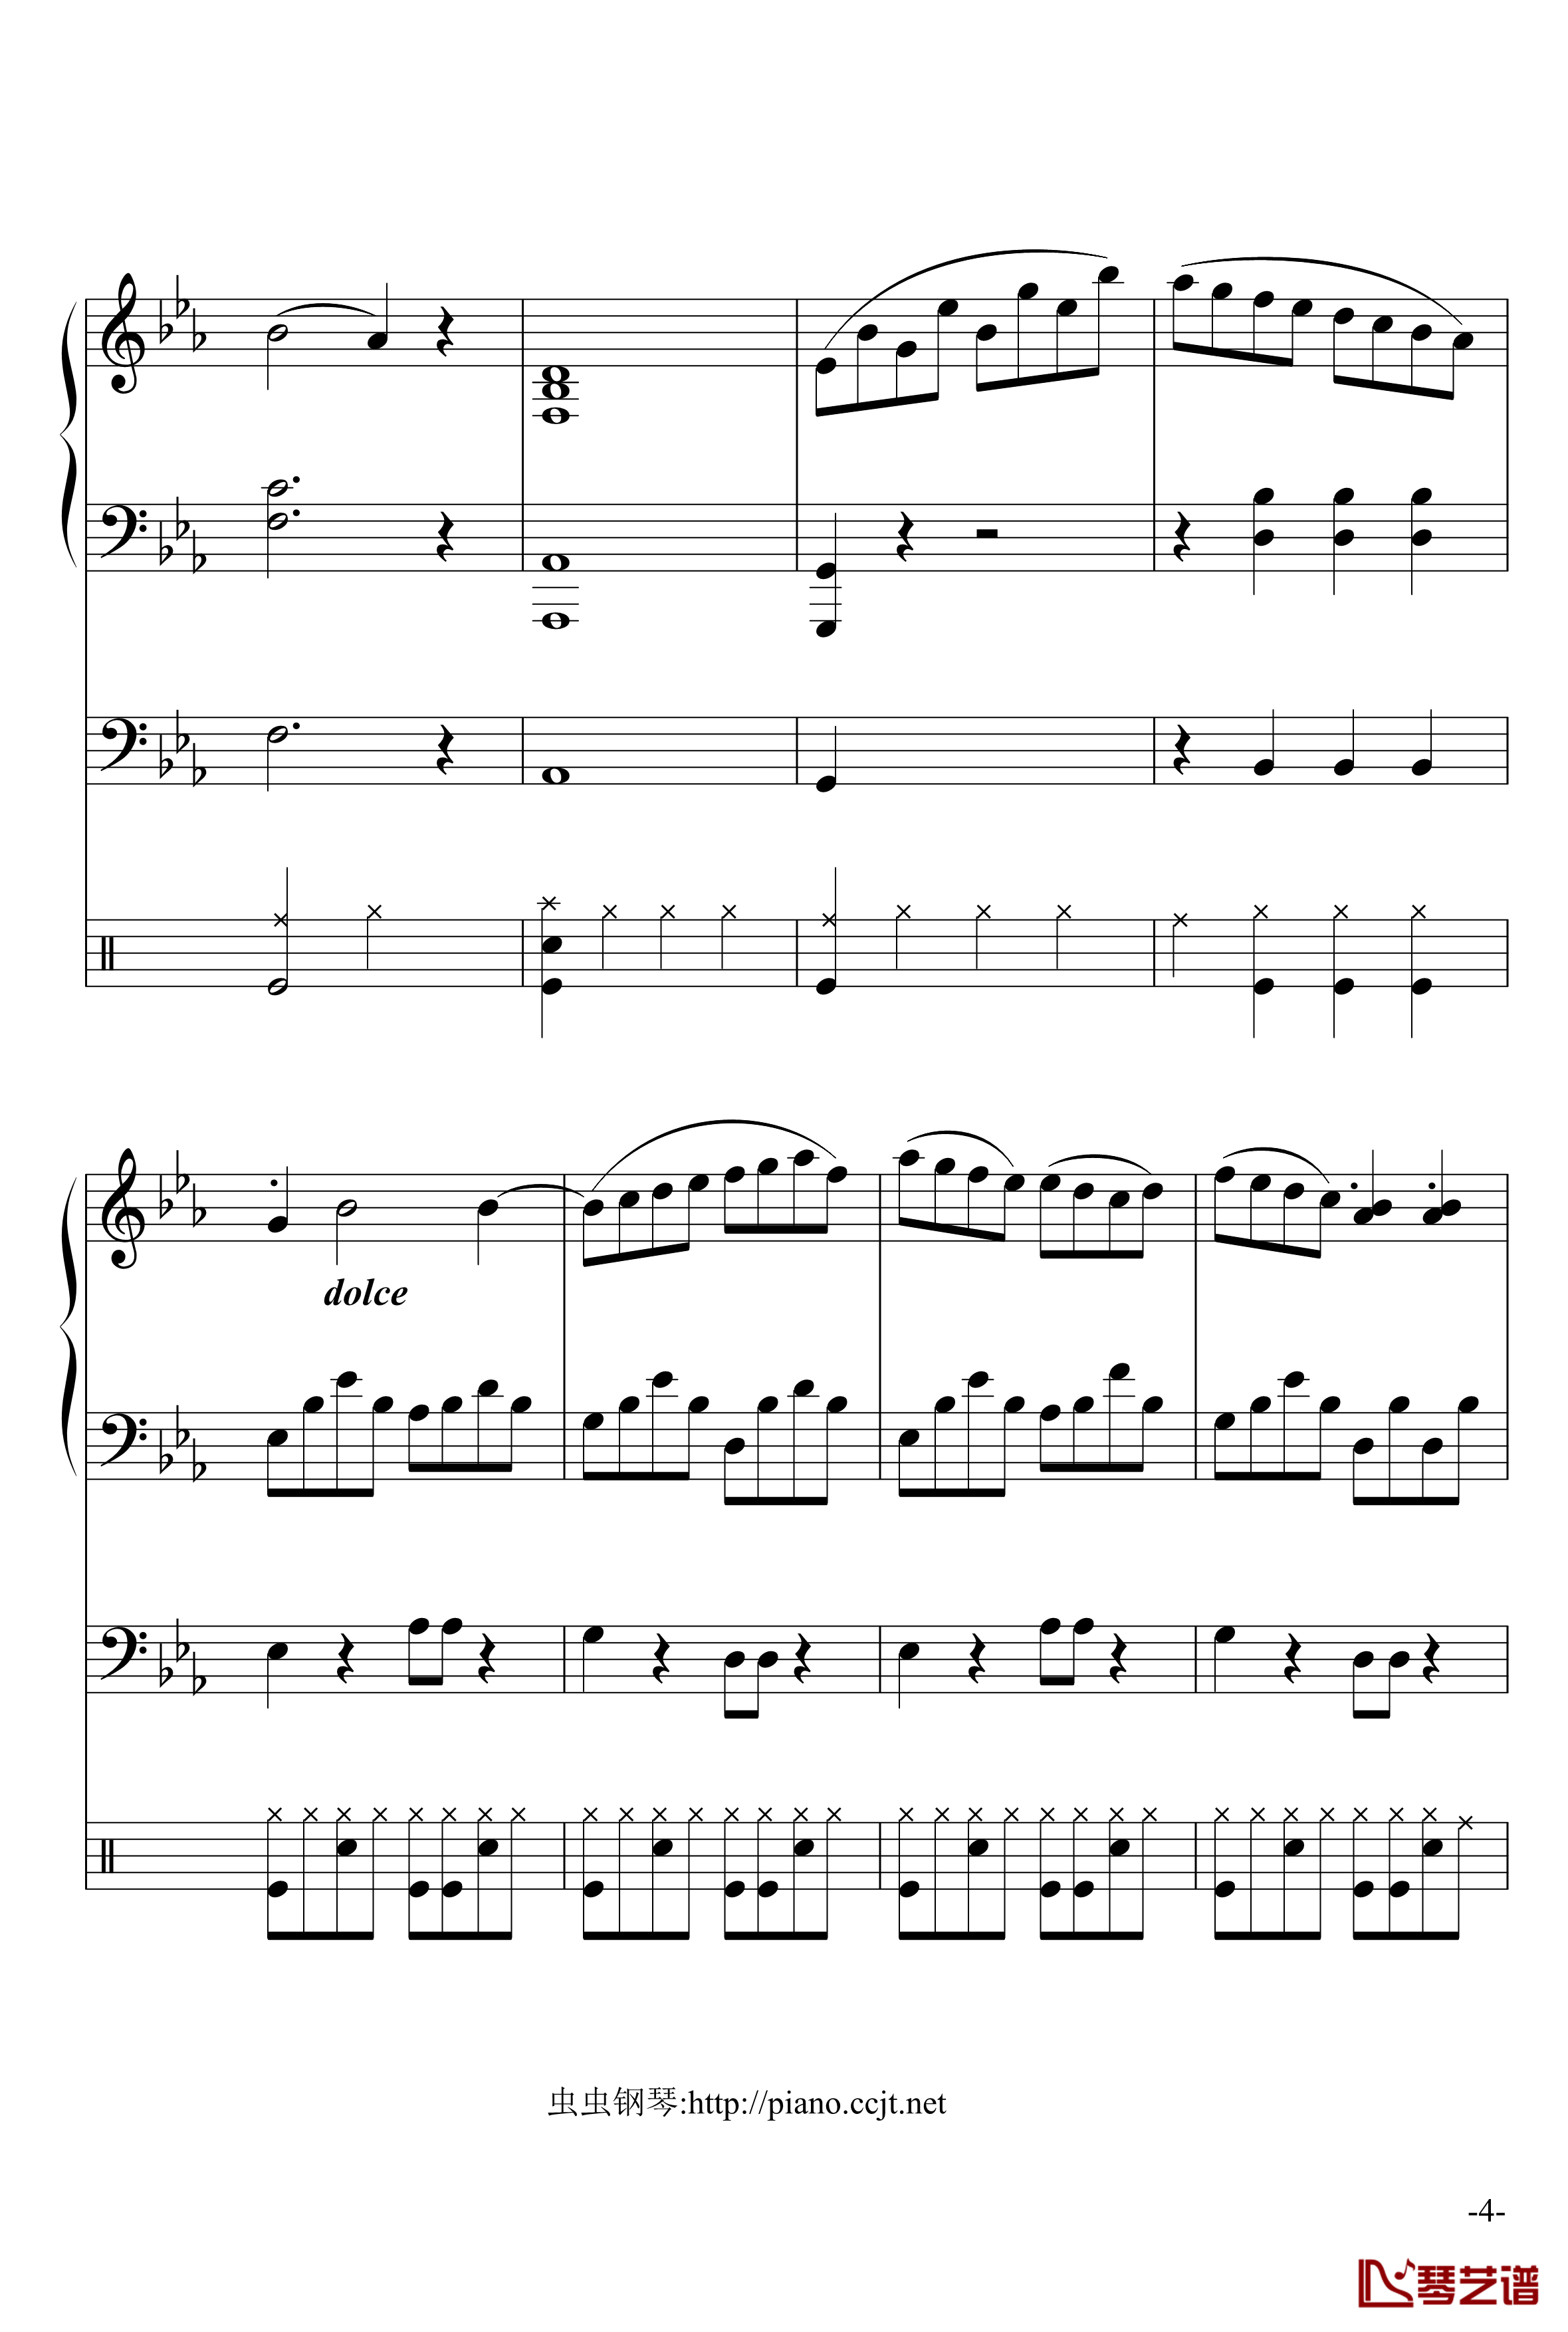 悲怆奏鸣曲钢琴谱-加小乐队-贝多芬-beethoven4